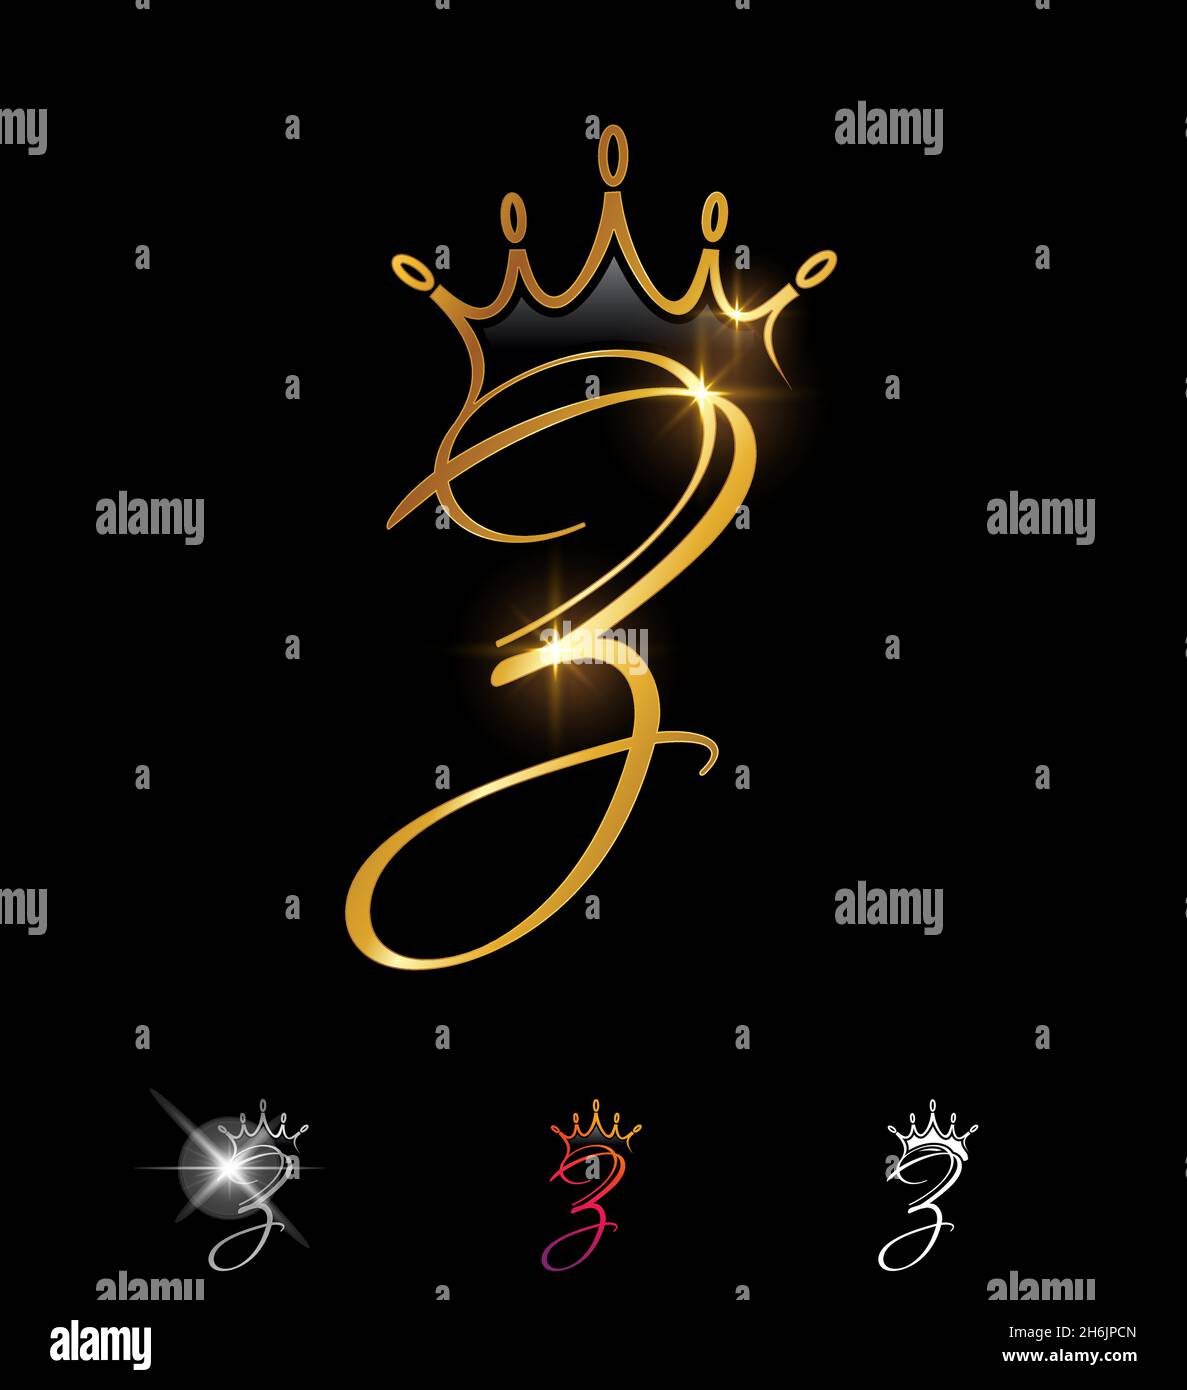 A Vector illustration set of Golden Crown Monogram Initial Letter Z ...